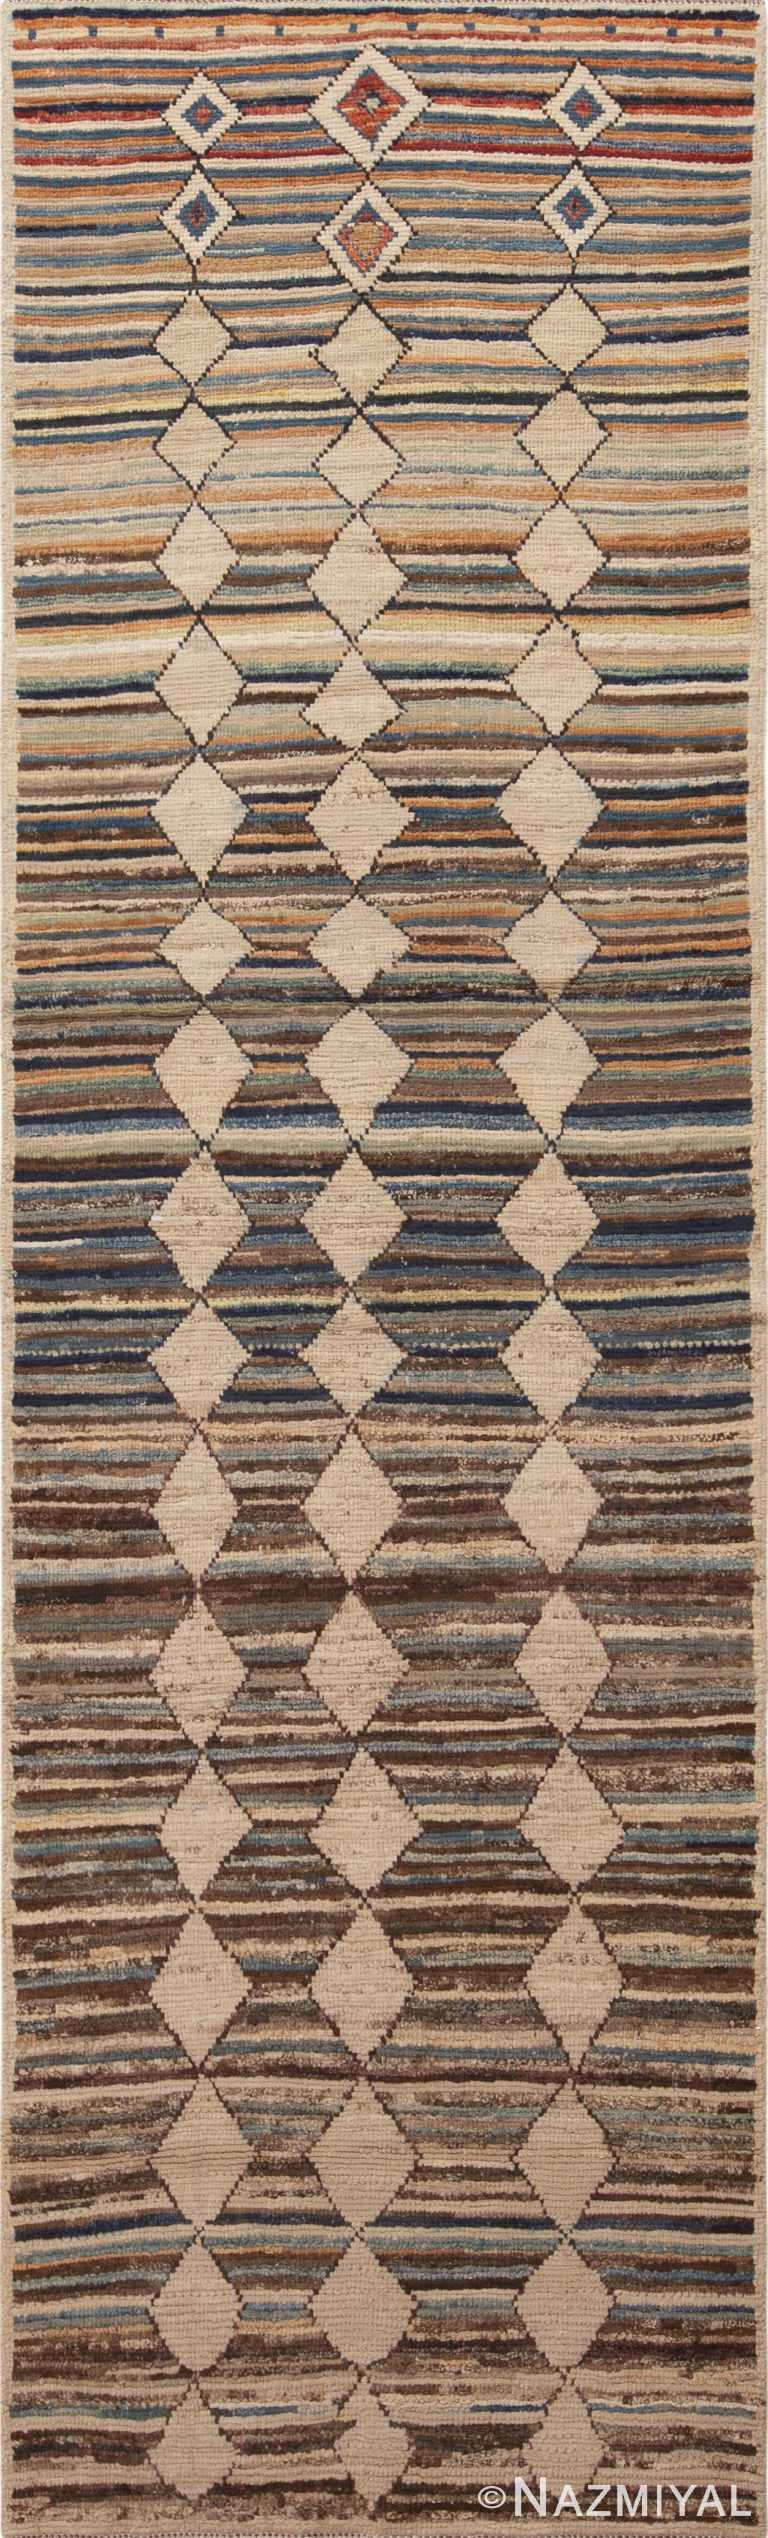 Earthy Brown Modern Tribal Geometric Hallway Runner Rug 11081 by Nazmiyal Antique Rugs